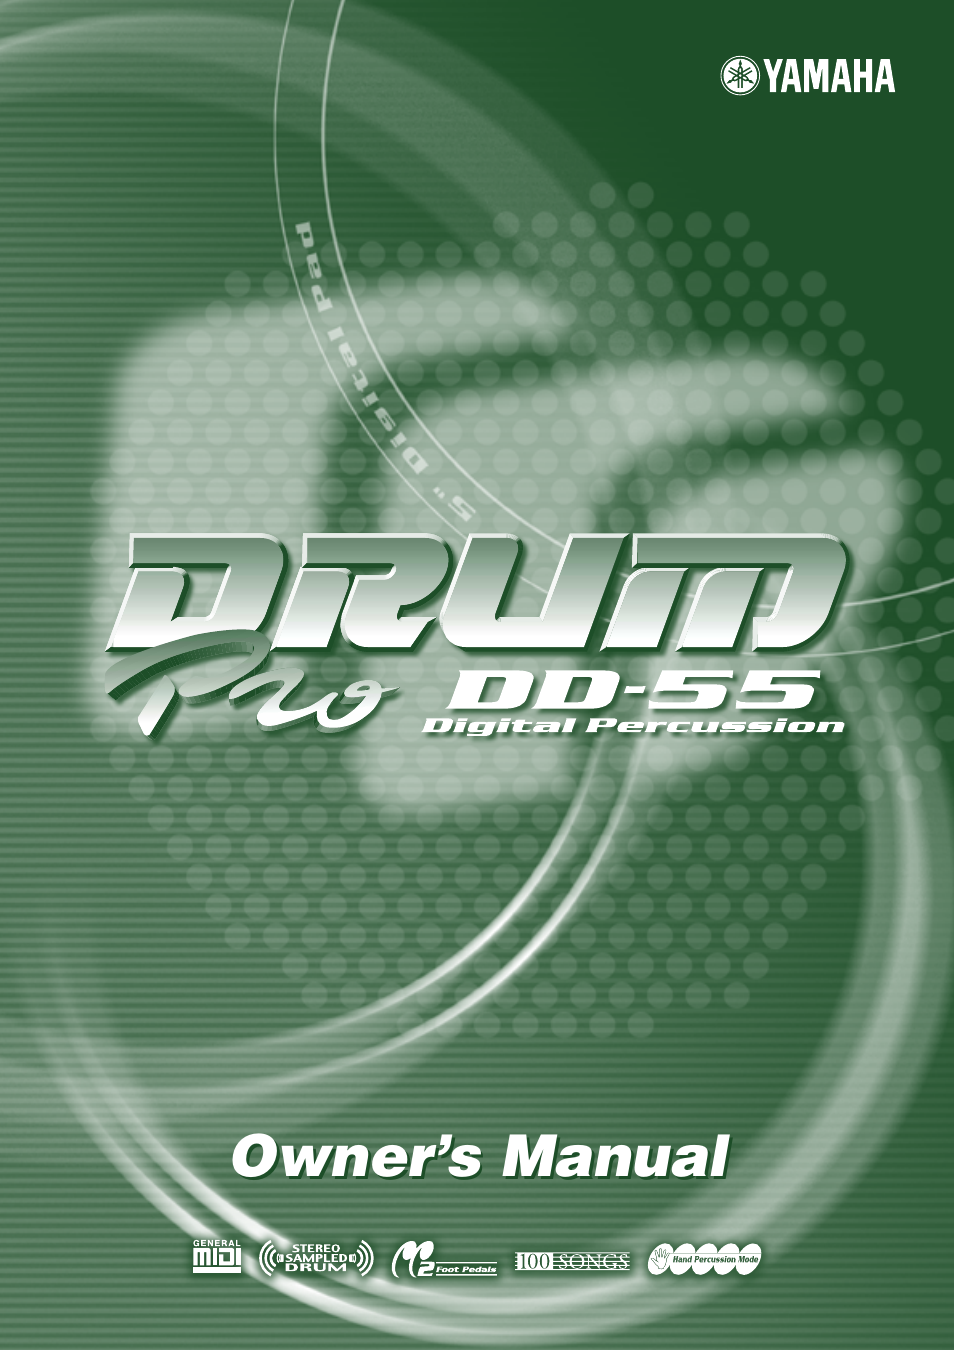 Druid Digital Percussion DD-55